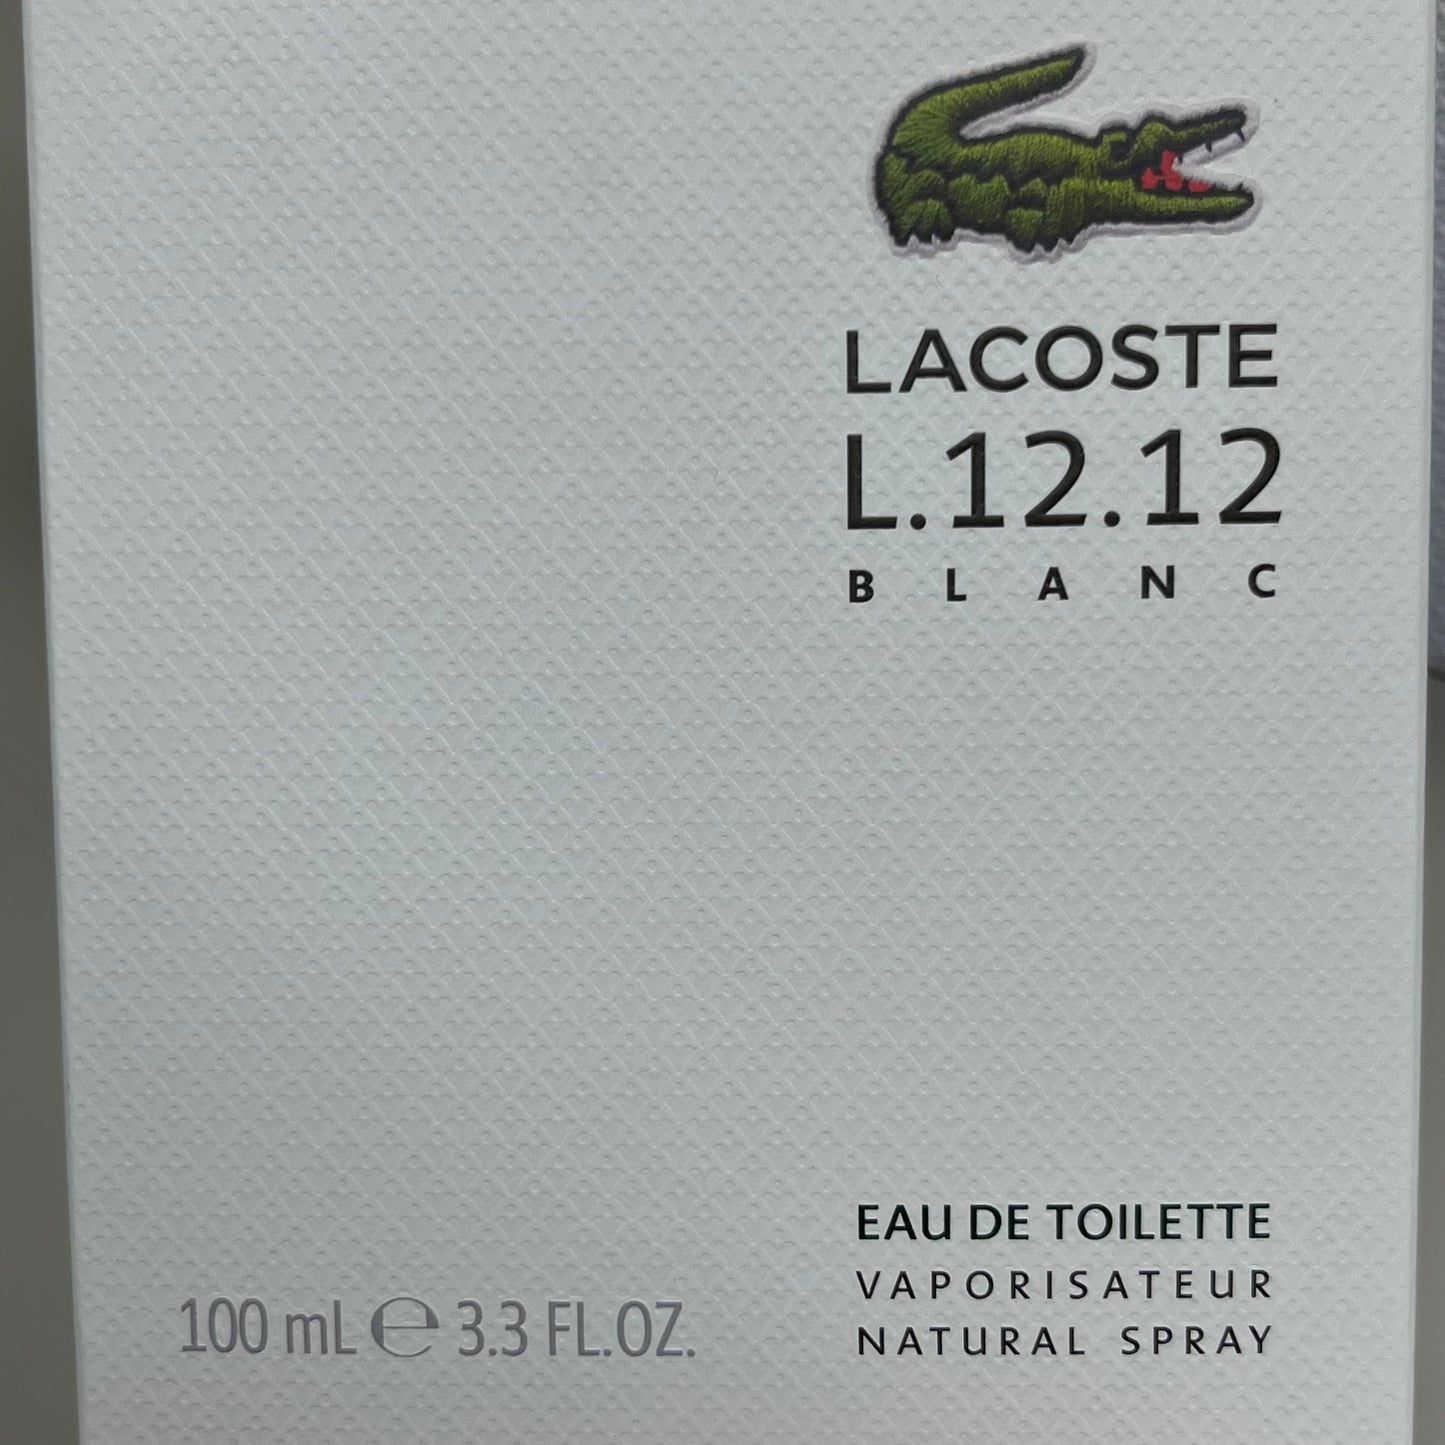 LACOSTE L.12.12 Blanc Eau De Toilette 3.3 Fl oz. White 2329 (New)